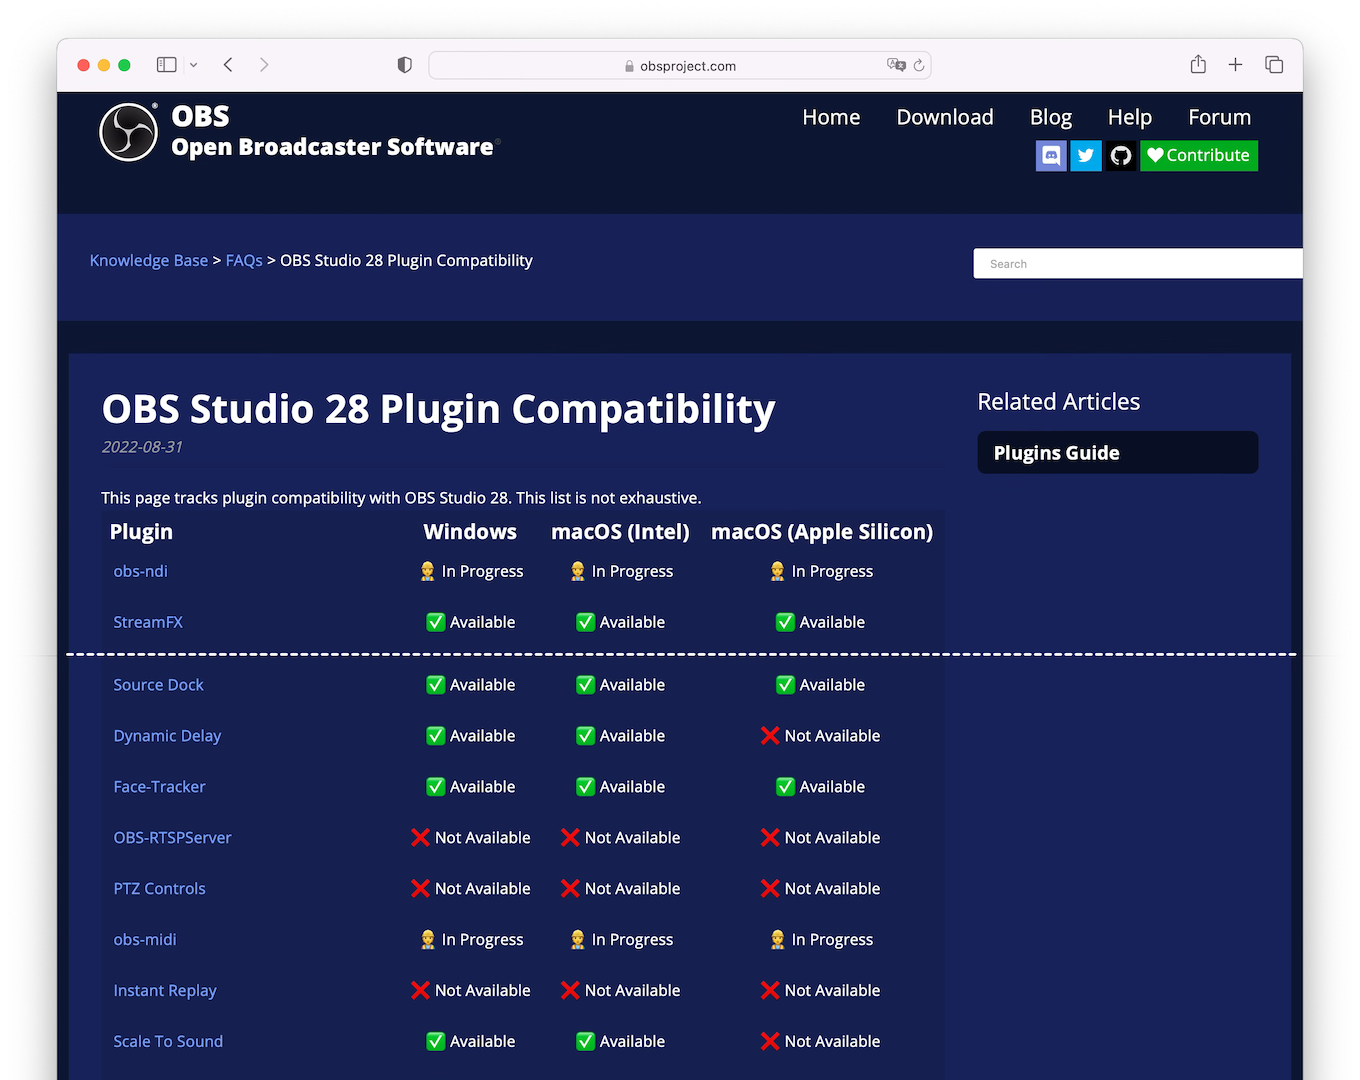 OBS Studio 28 Plugin Compatibility